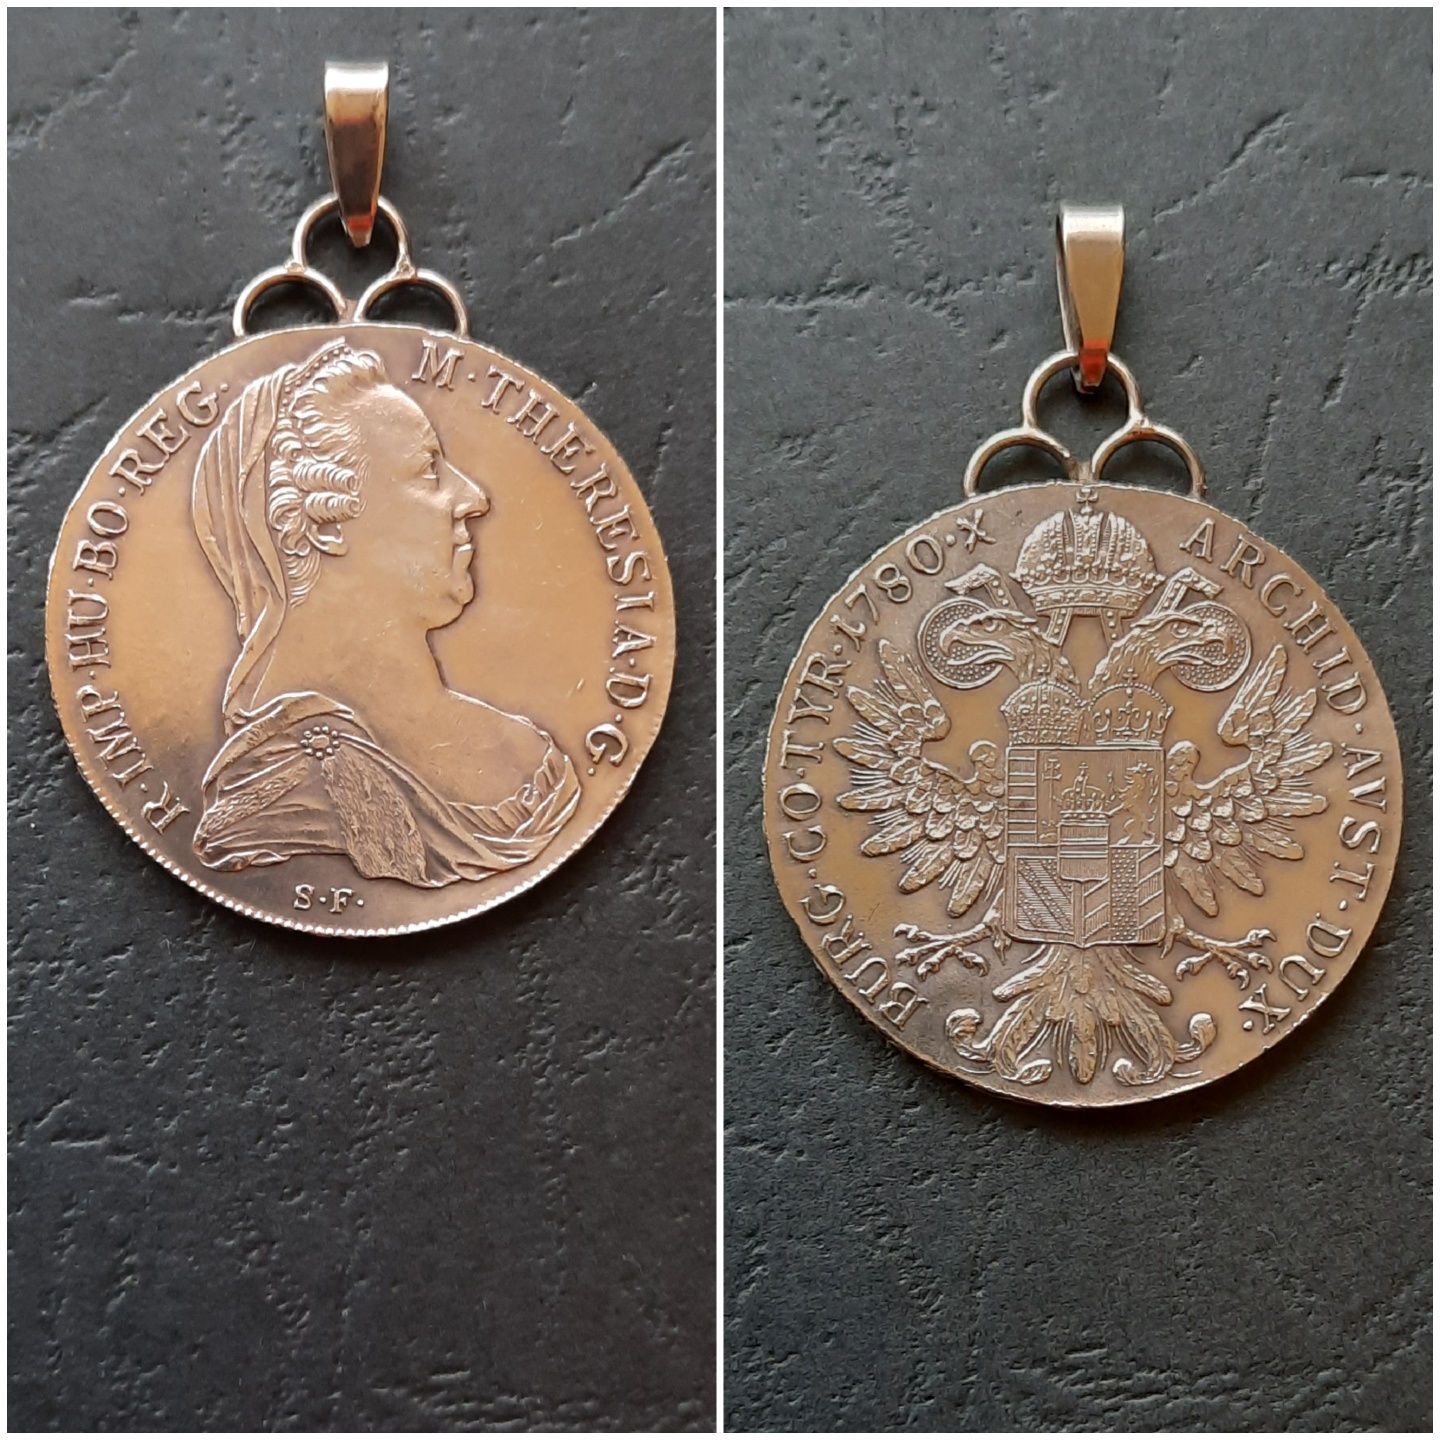 Pandantive cu monede de argint in montura - G3682